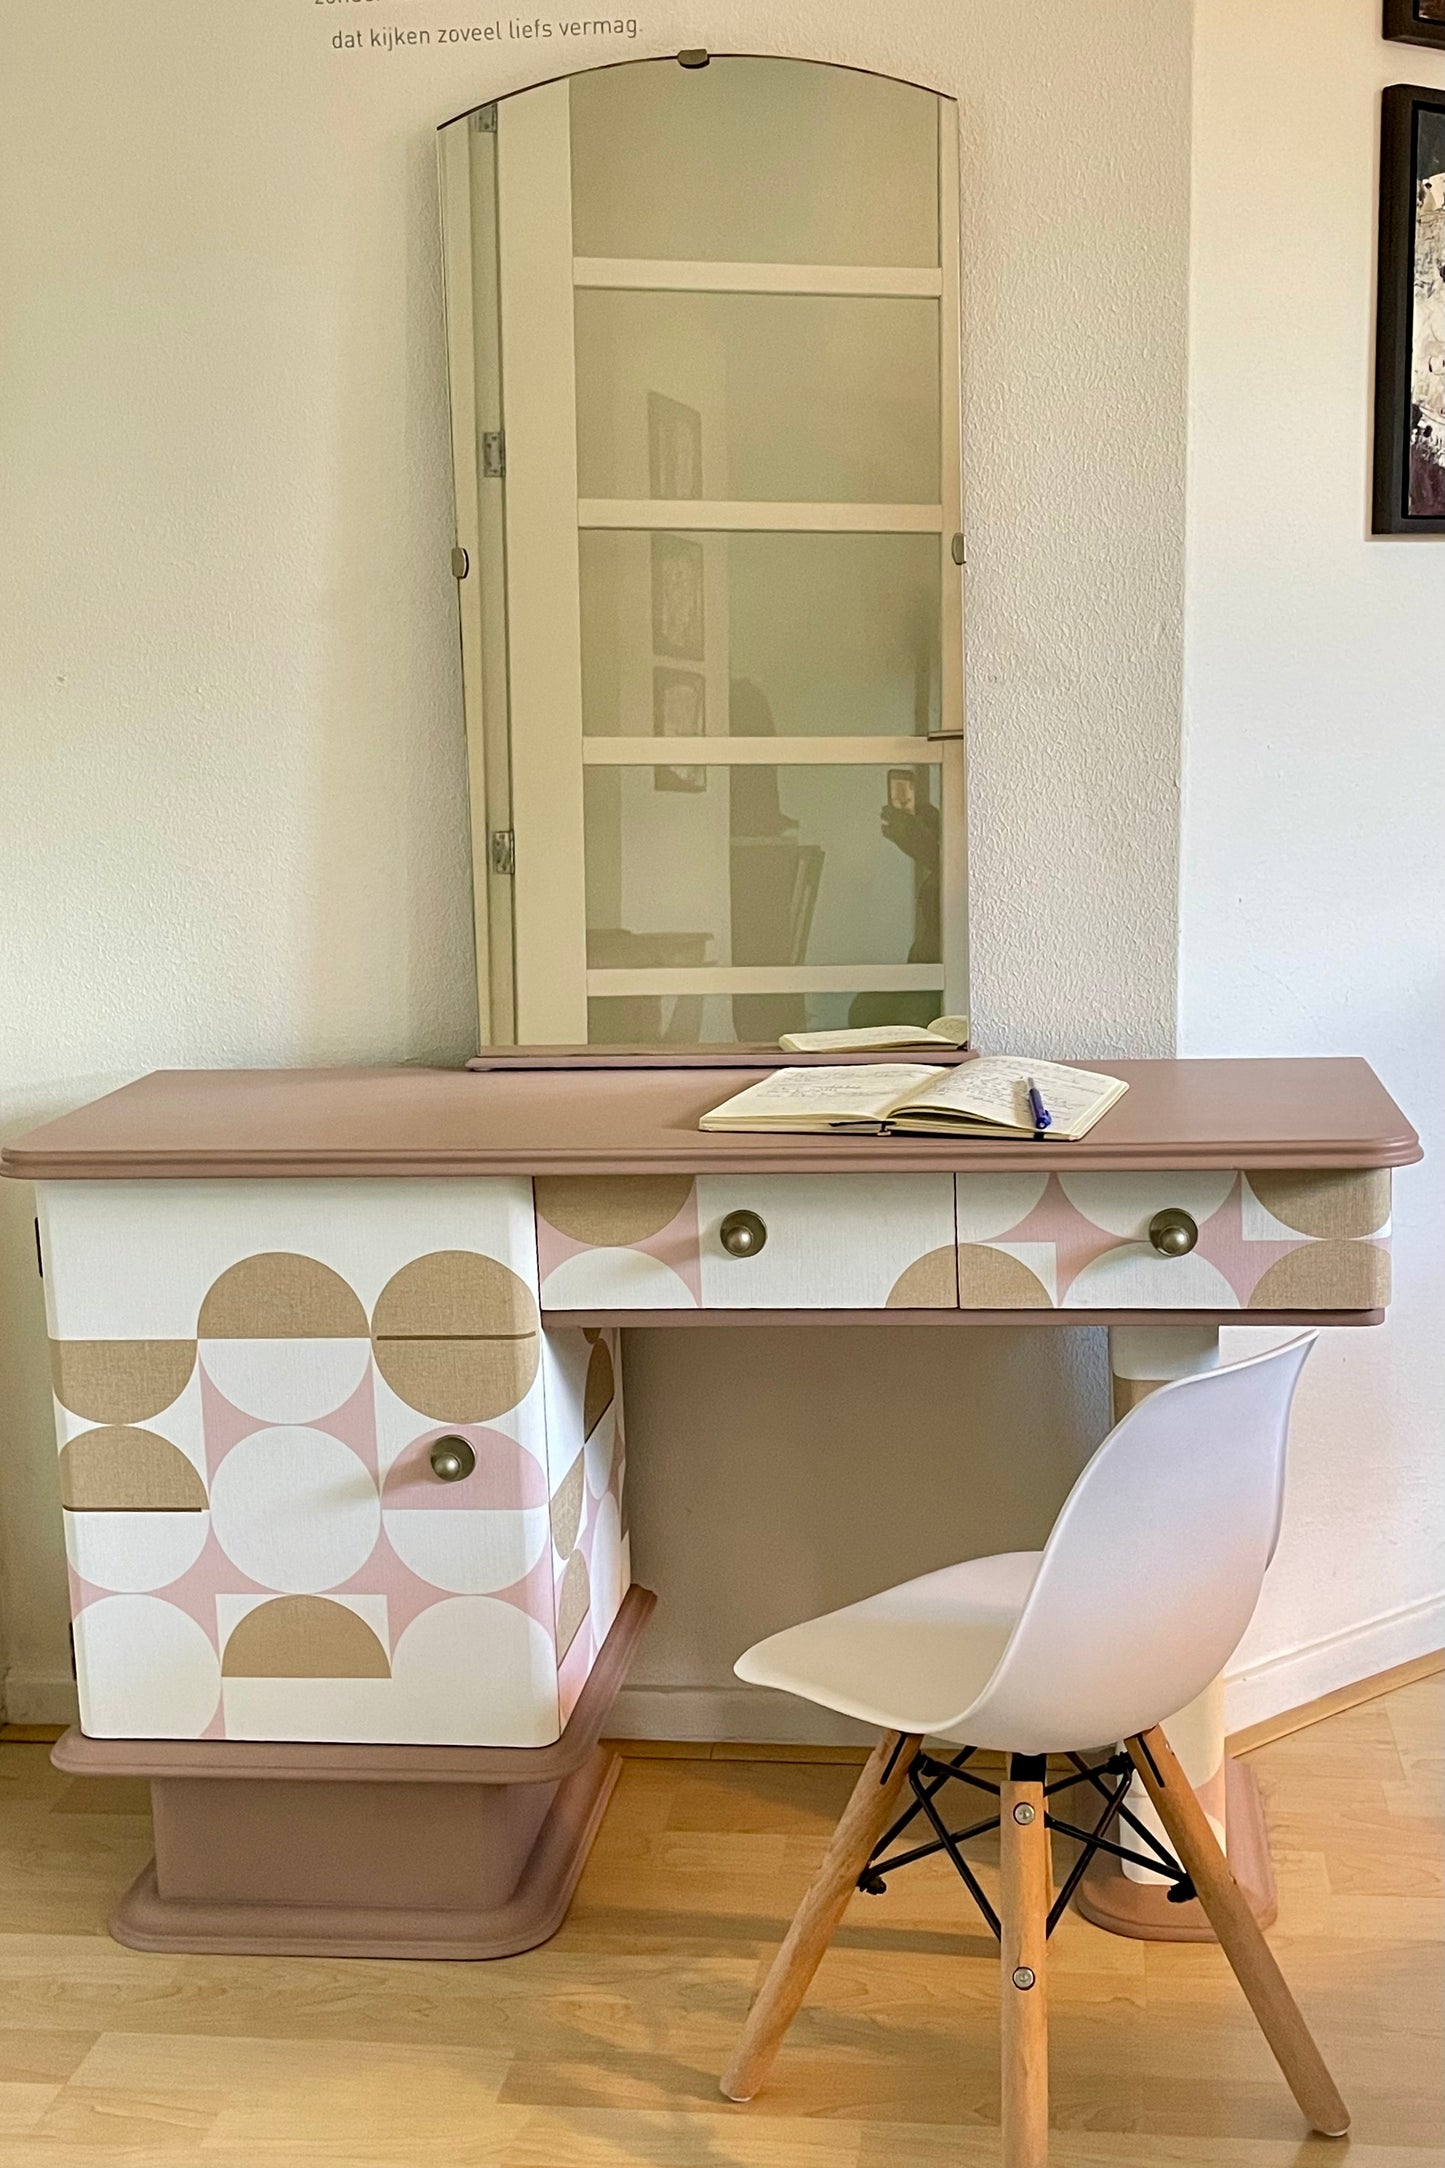 Glad ontspannen leerling Vintage bureau en kaptafel bekleed met een prachtige print in roze, goud en  wit | The Vintage Vibe | The Vintage Vibe